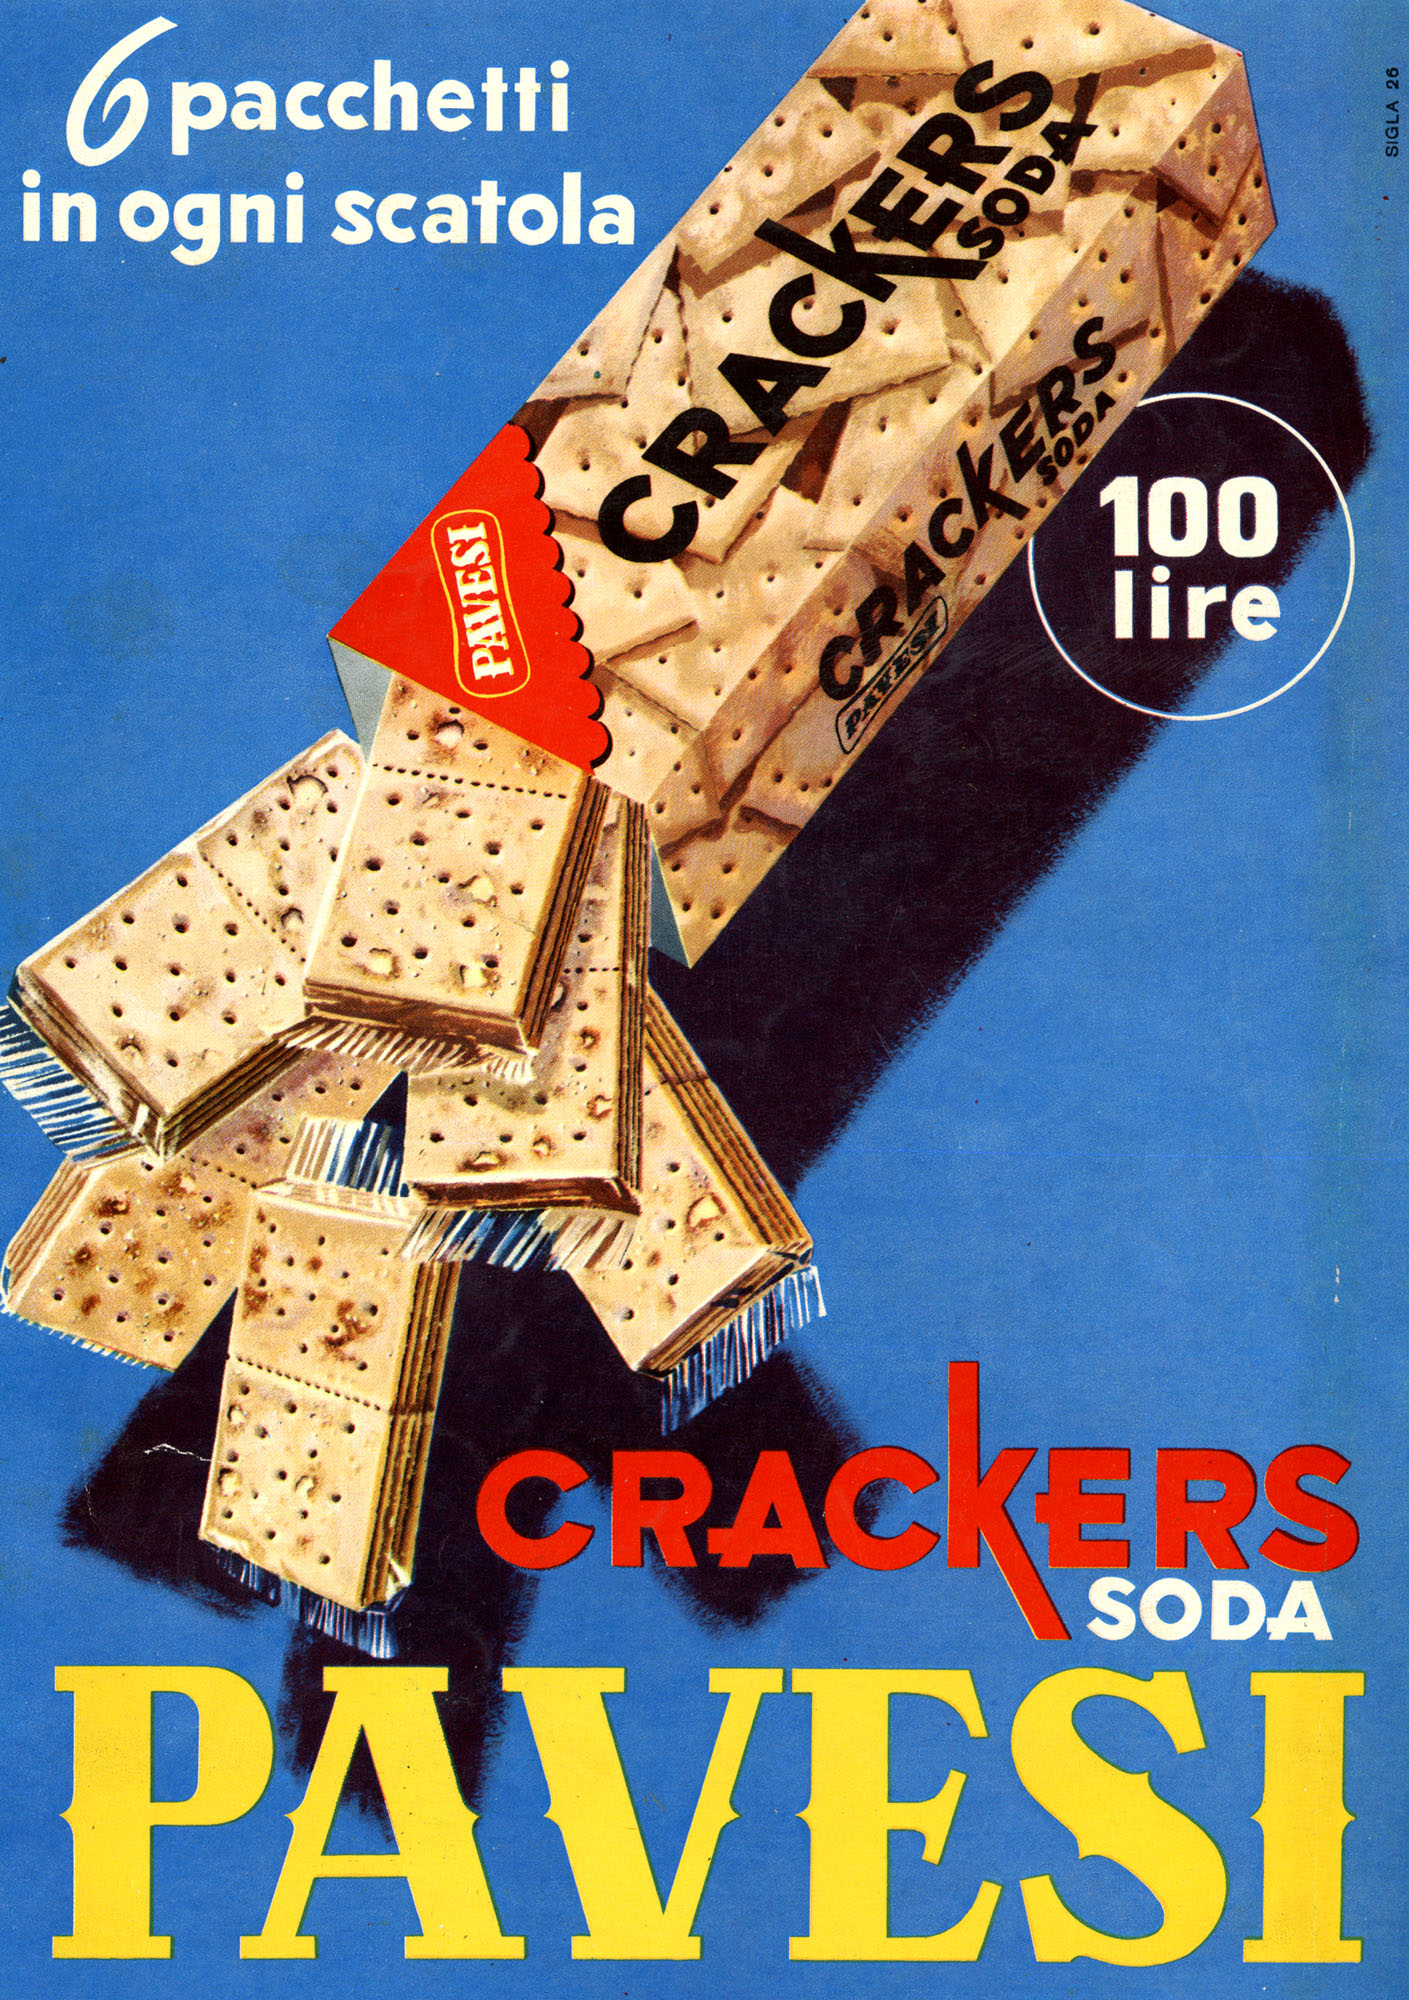 Pubblicità stampa Crakers Soda Pavesi, 1956